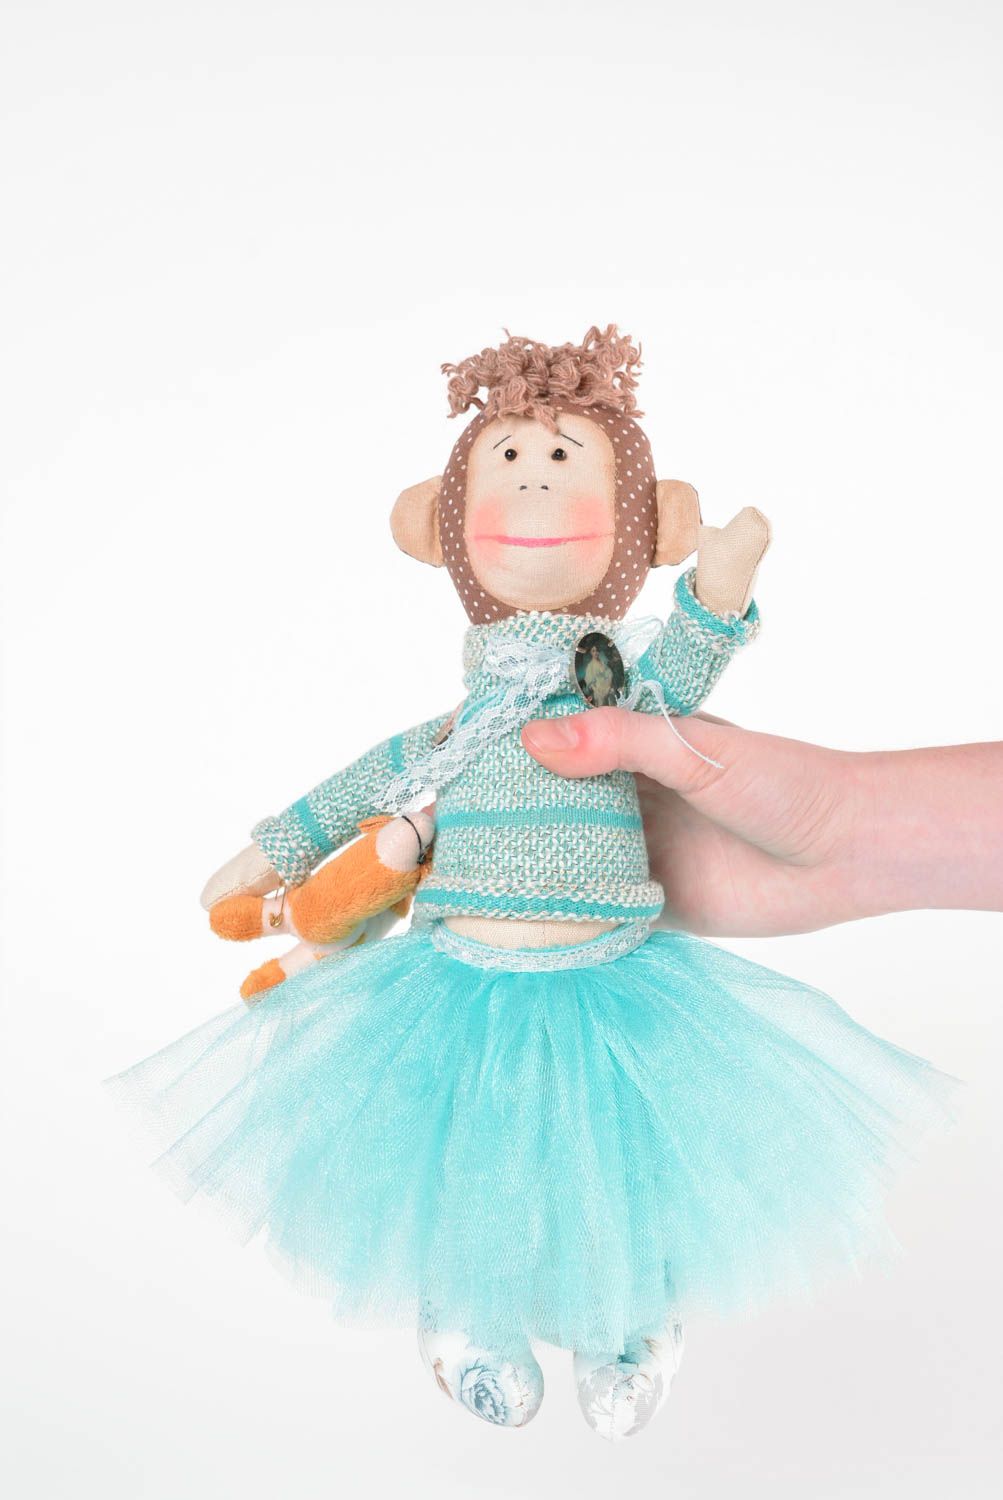 Mono de peluche hecho a mano juguete de tela regalo original elemento decorativo foto 2